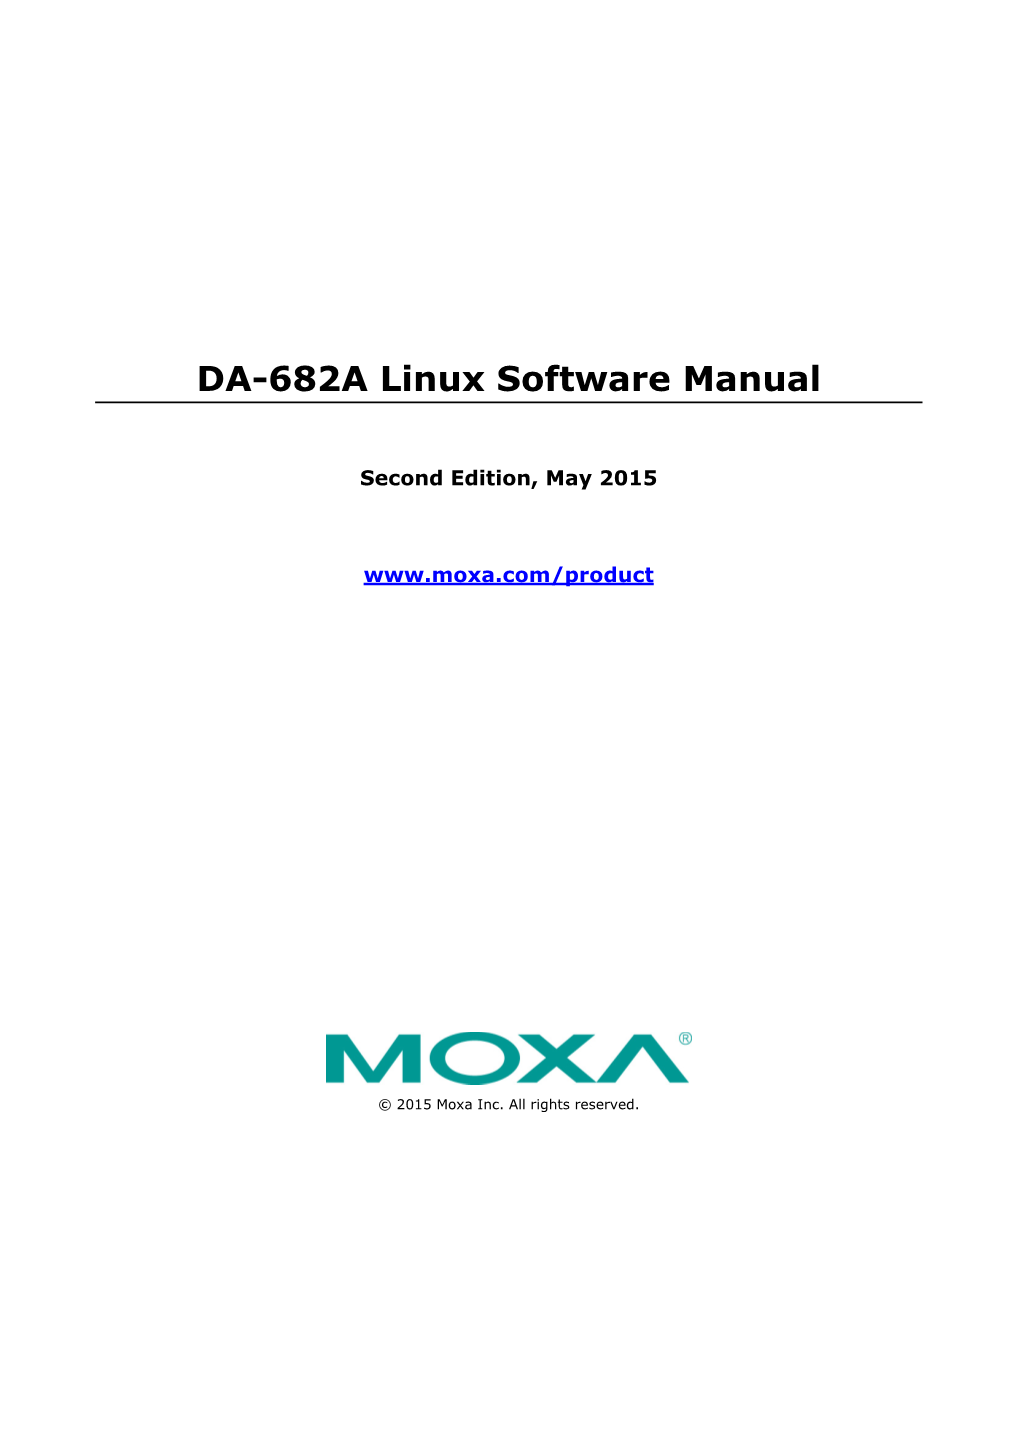 DA-682A-LX Sowftware Manual